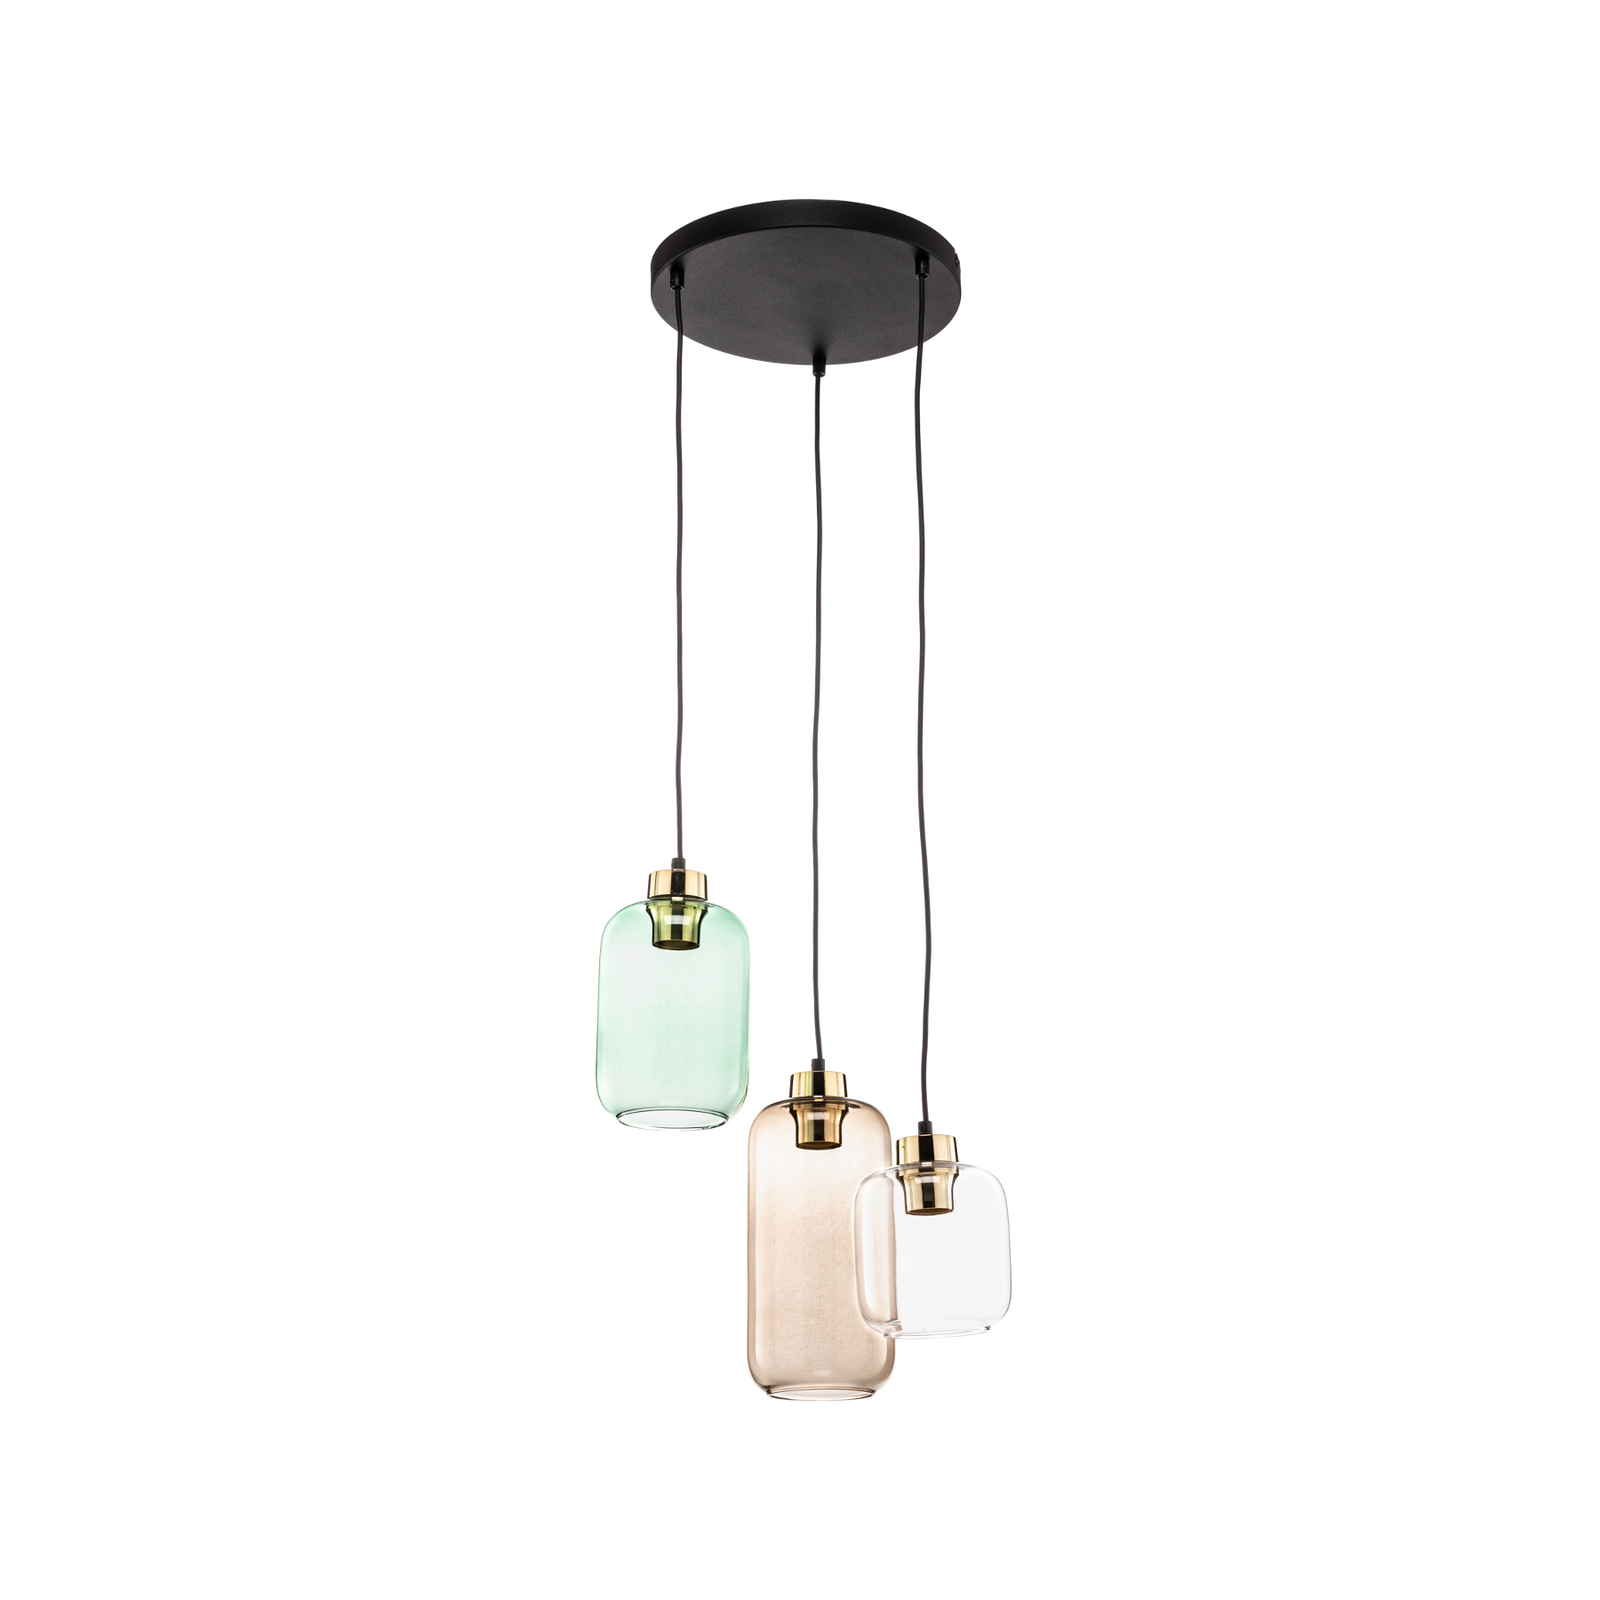 Marco Green hanglamp, 3-lamps helder/groen/bruin